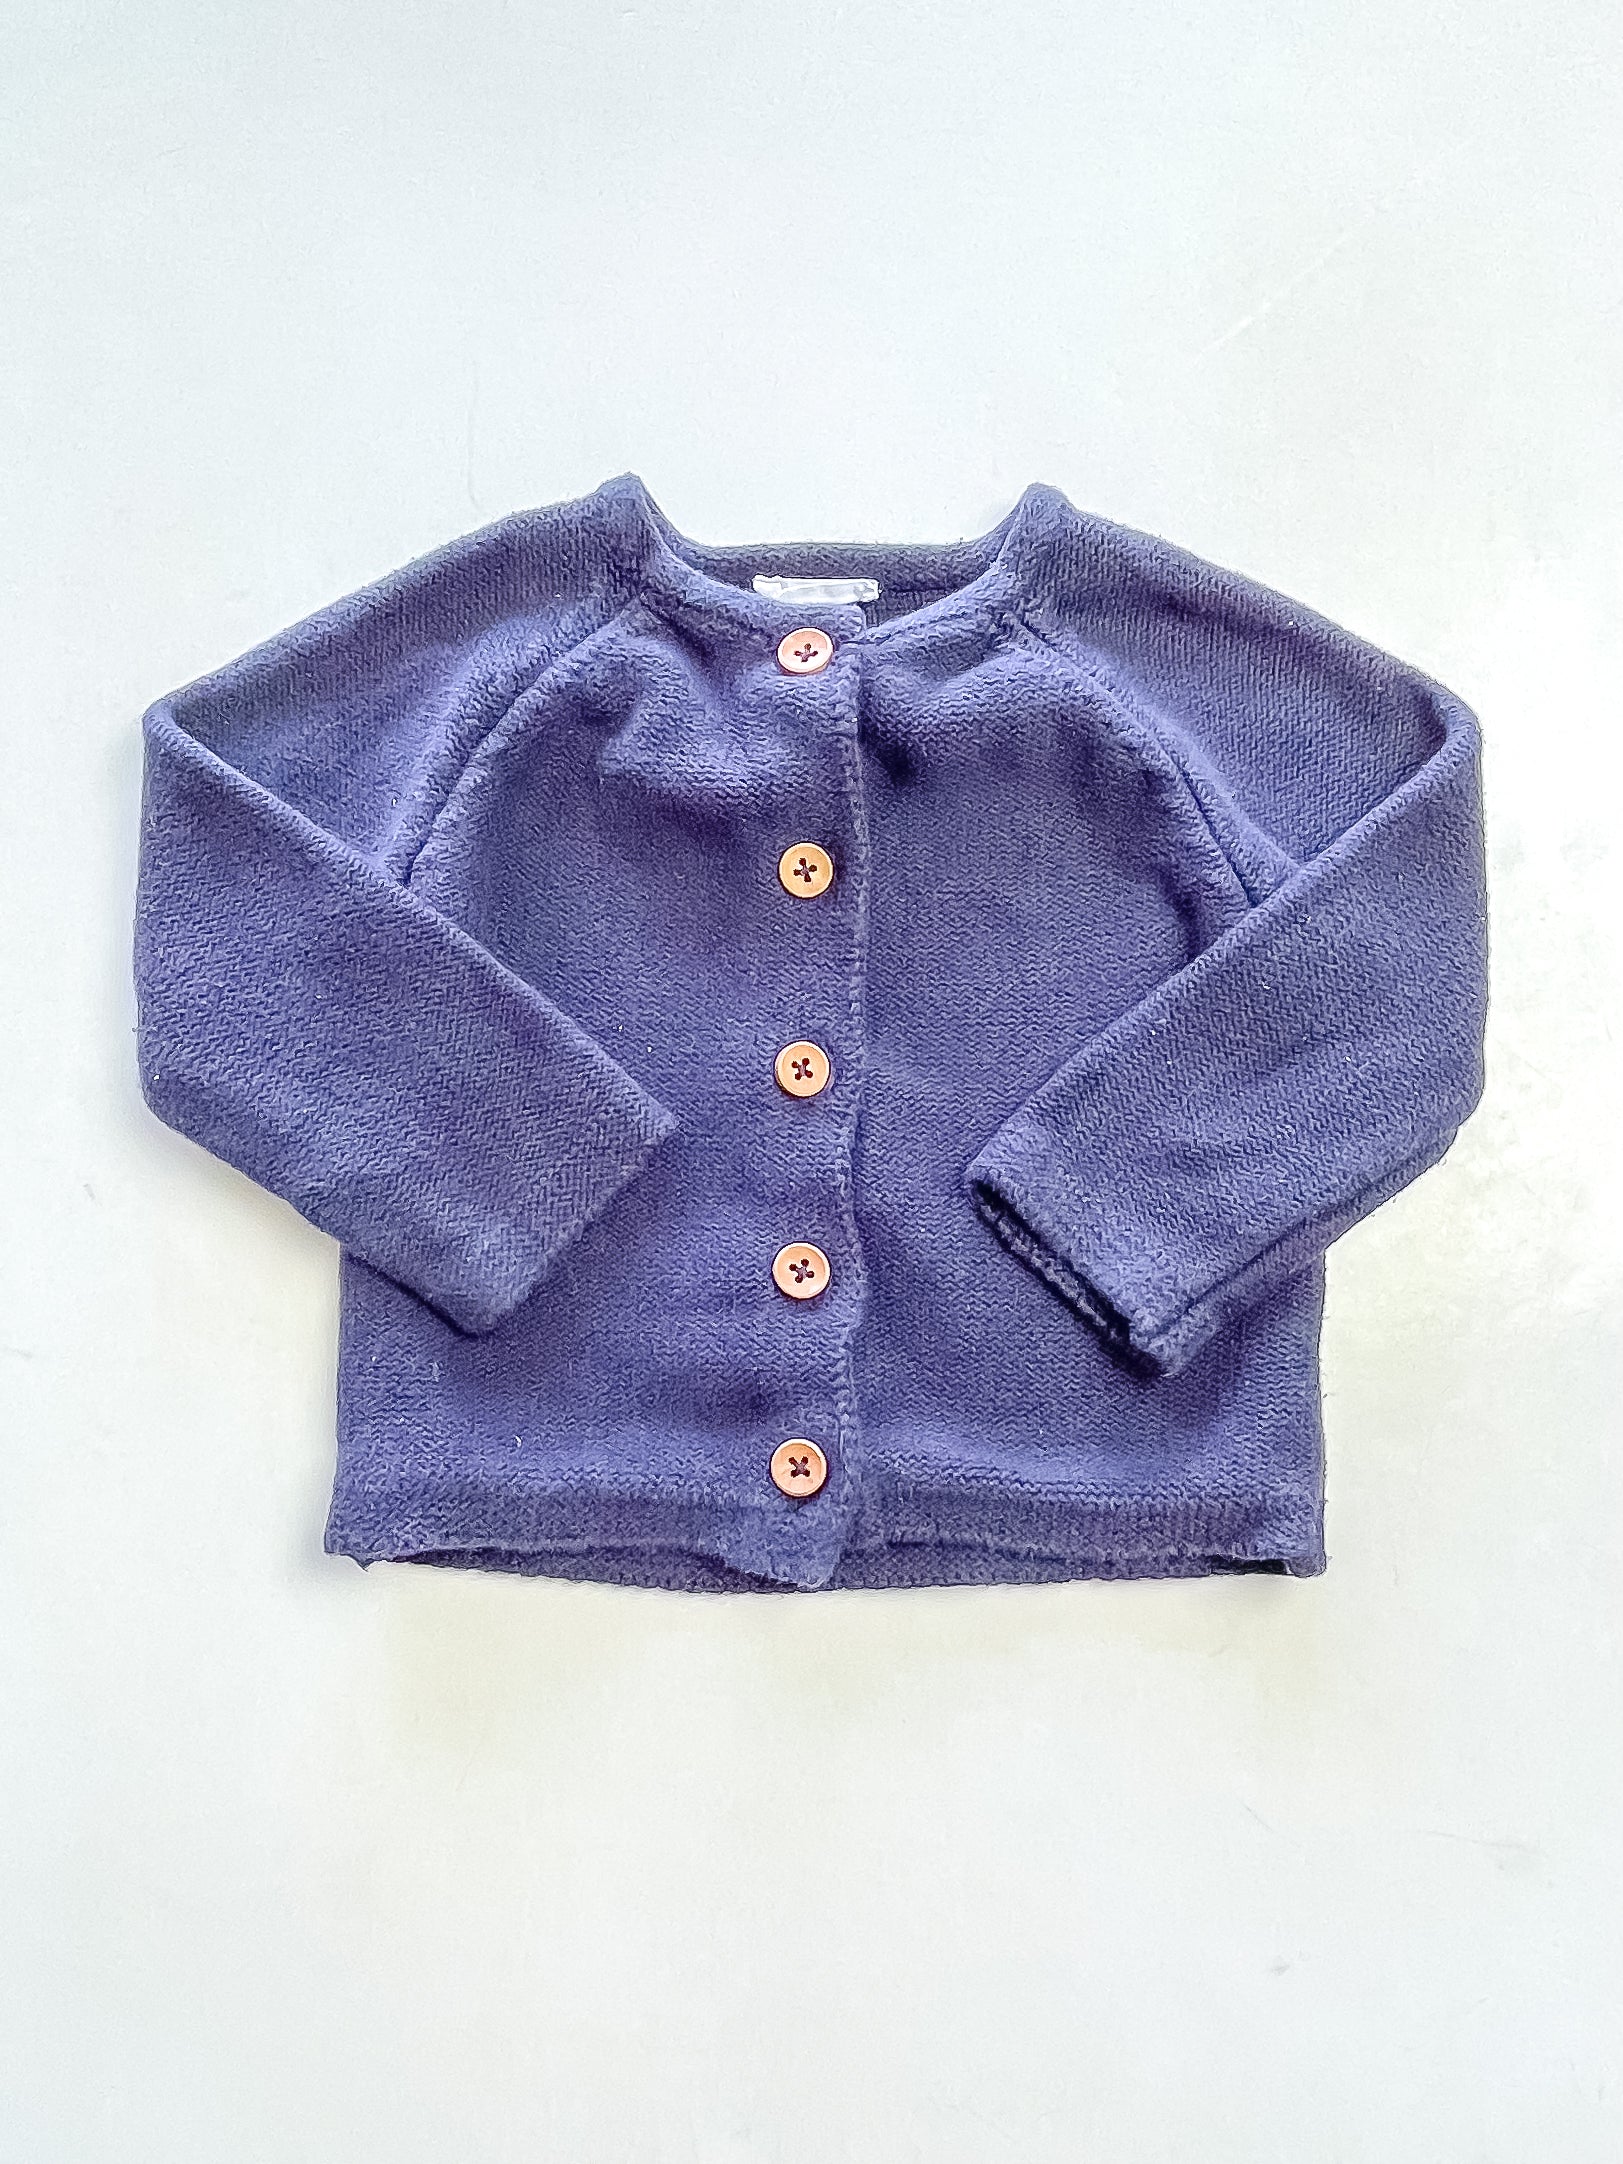 Jamie Kay simple knit cardigan (6-12m)